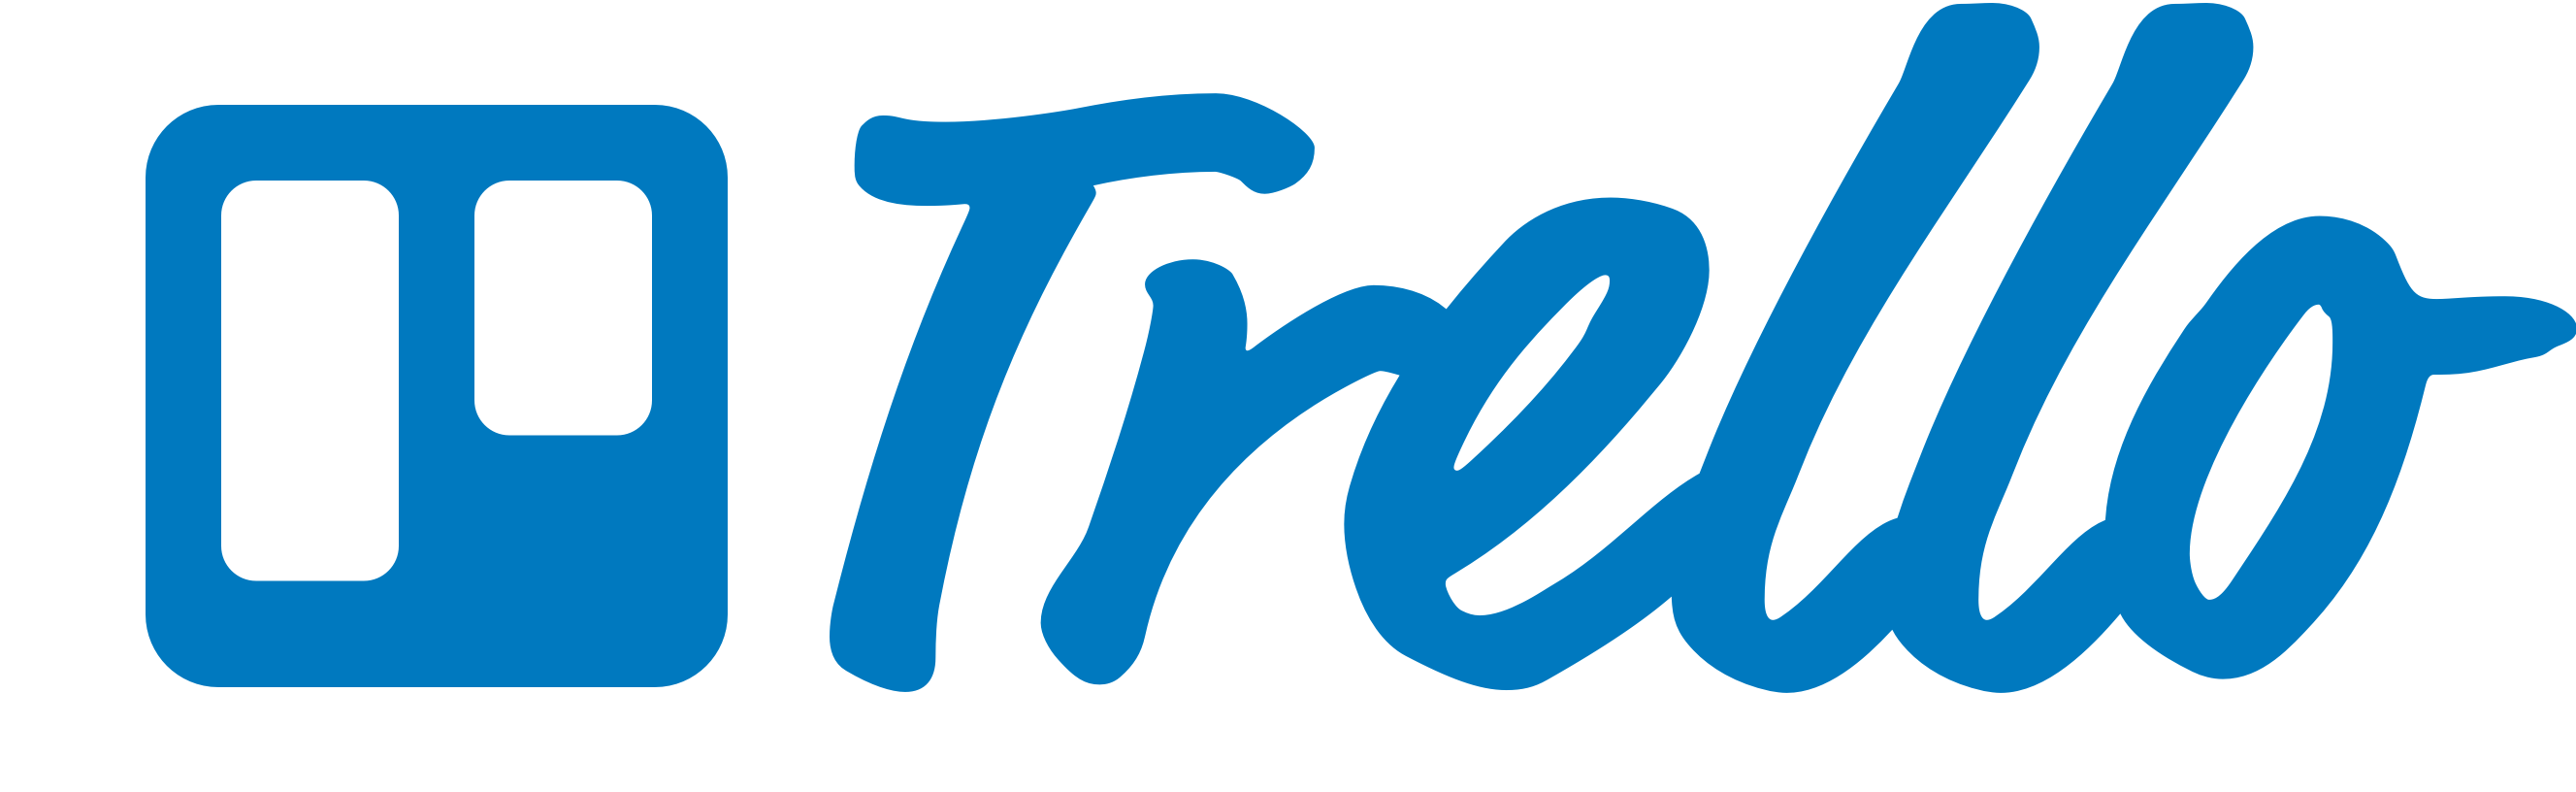 File:Trello logo.png